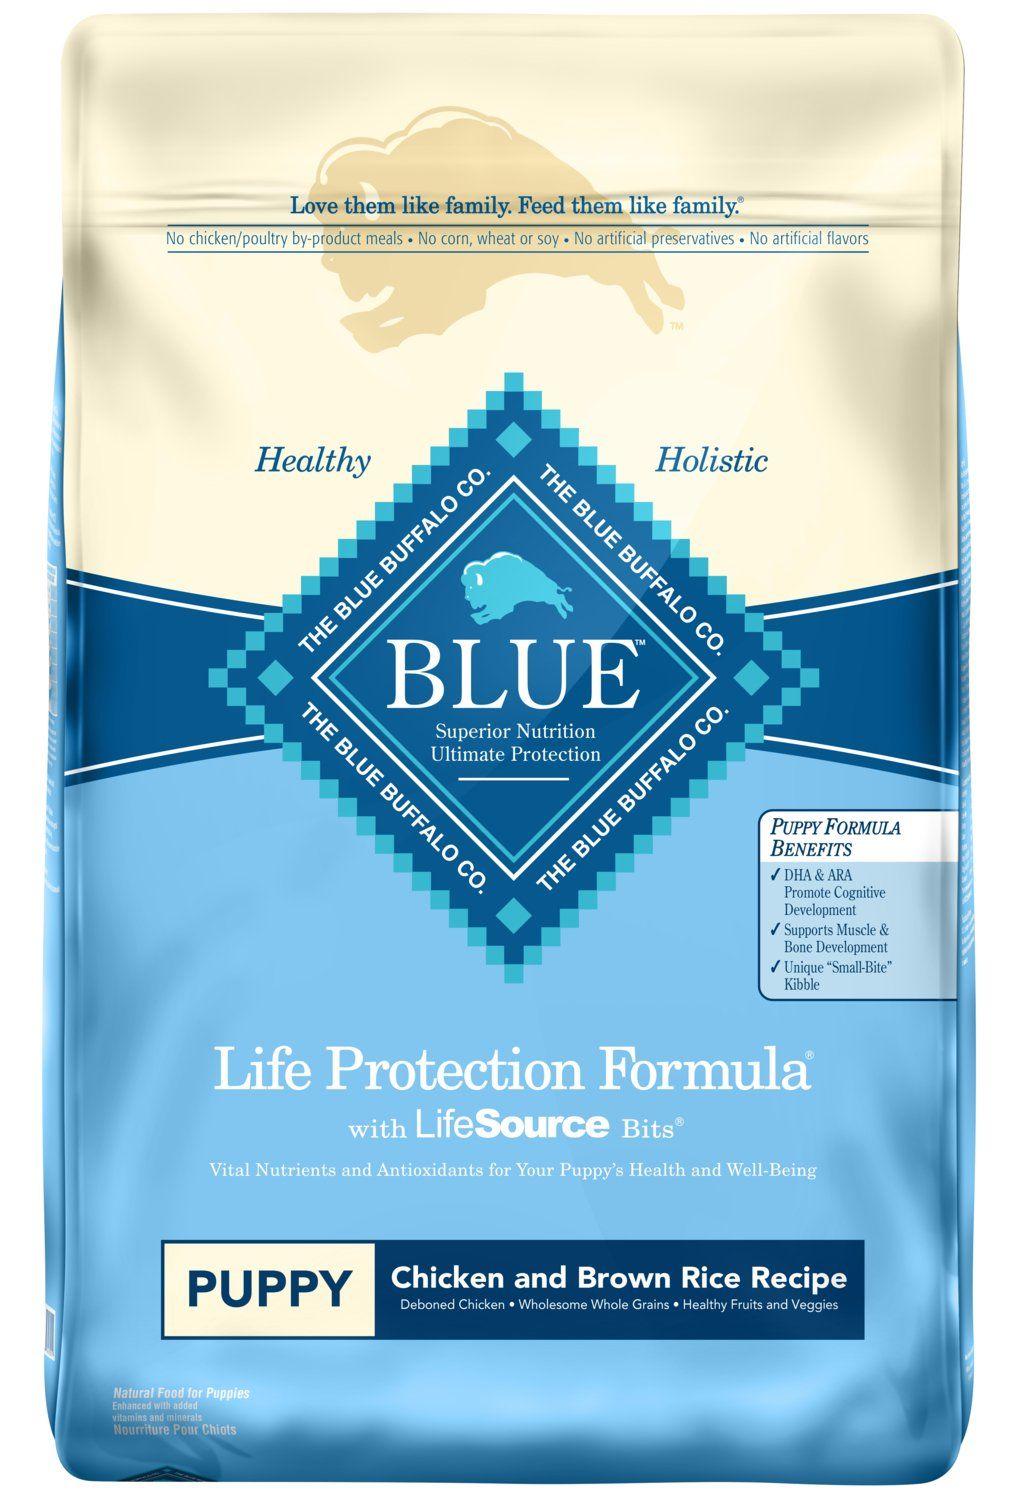 Blue Dog Food Logo - Amazon.com: Blue Buffalo Life Protection Formula Puppy Dog Food ...